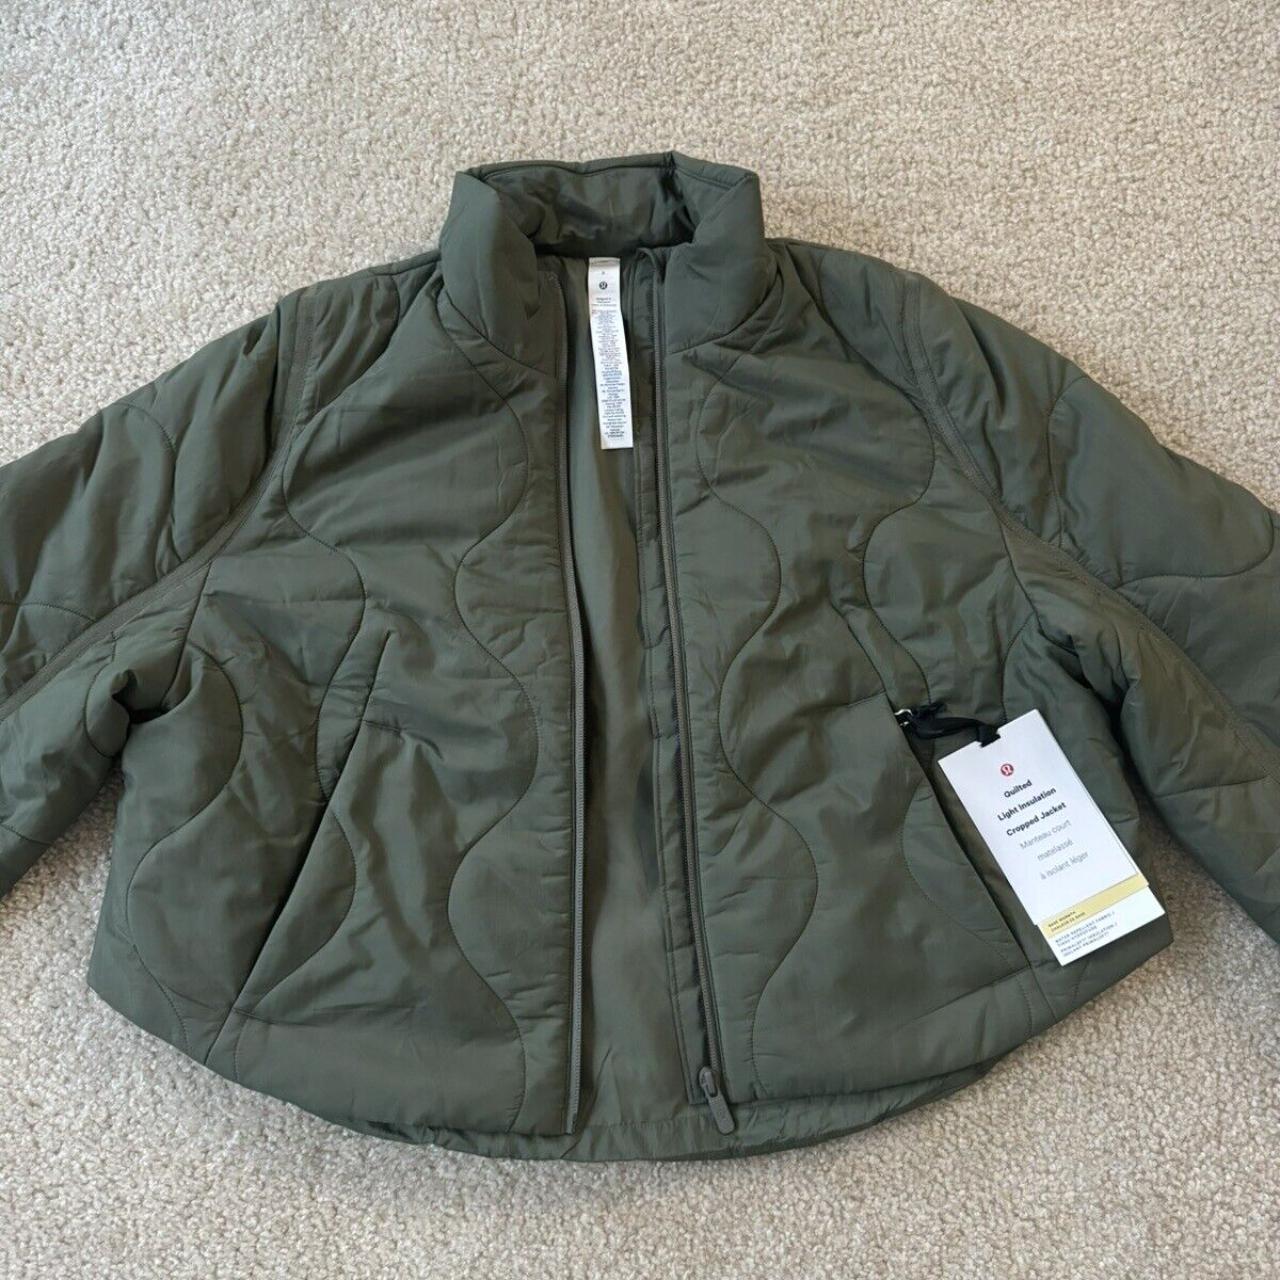 Lululemon quilted light insulation cropped jacket - Depop